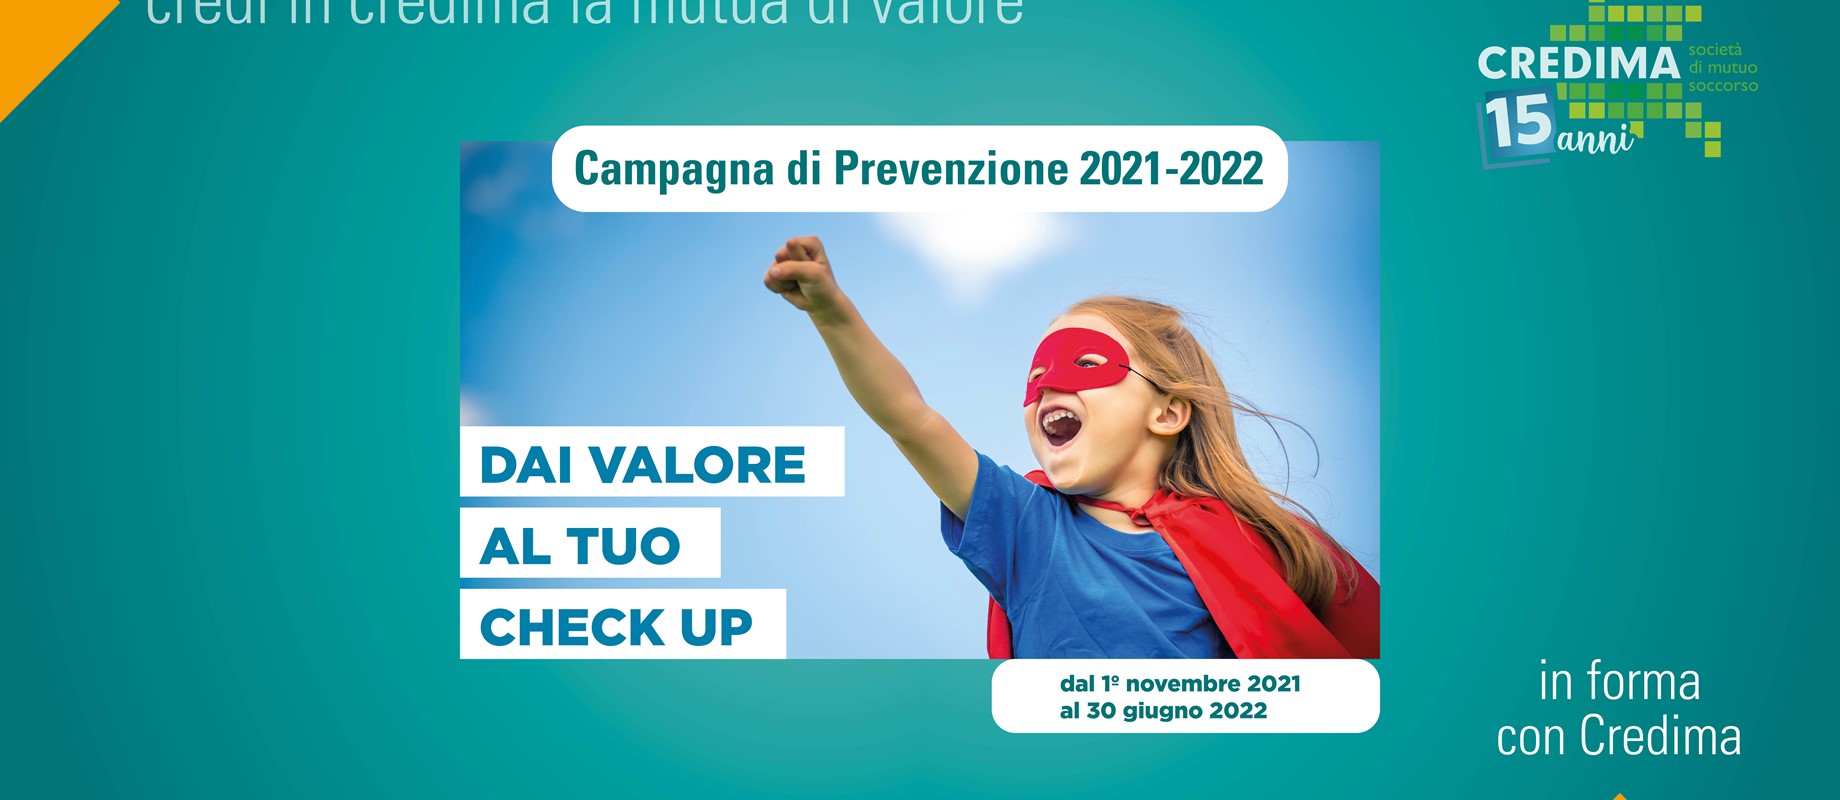 Campagna di Prevenzione Check up 2021-2022 